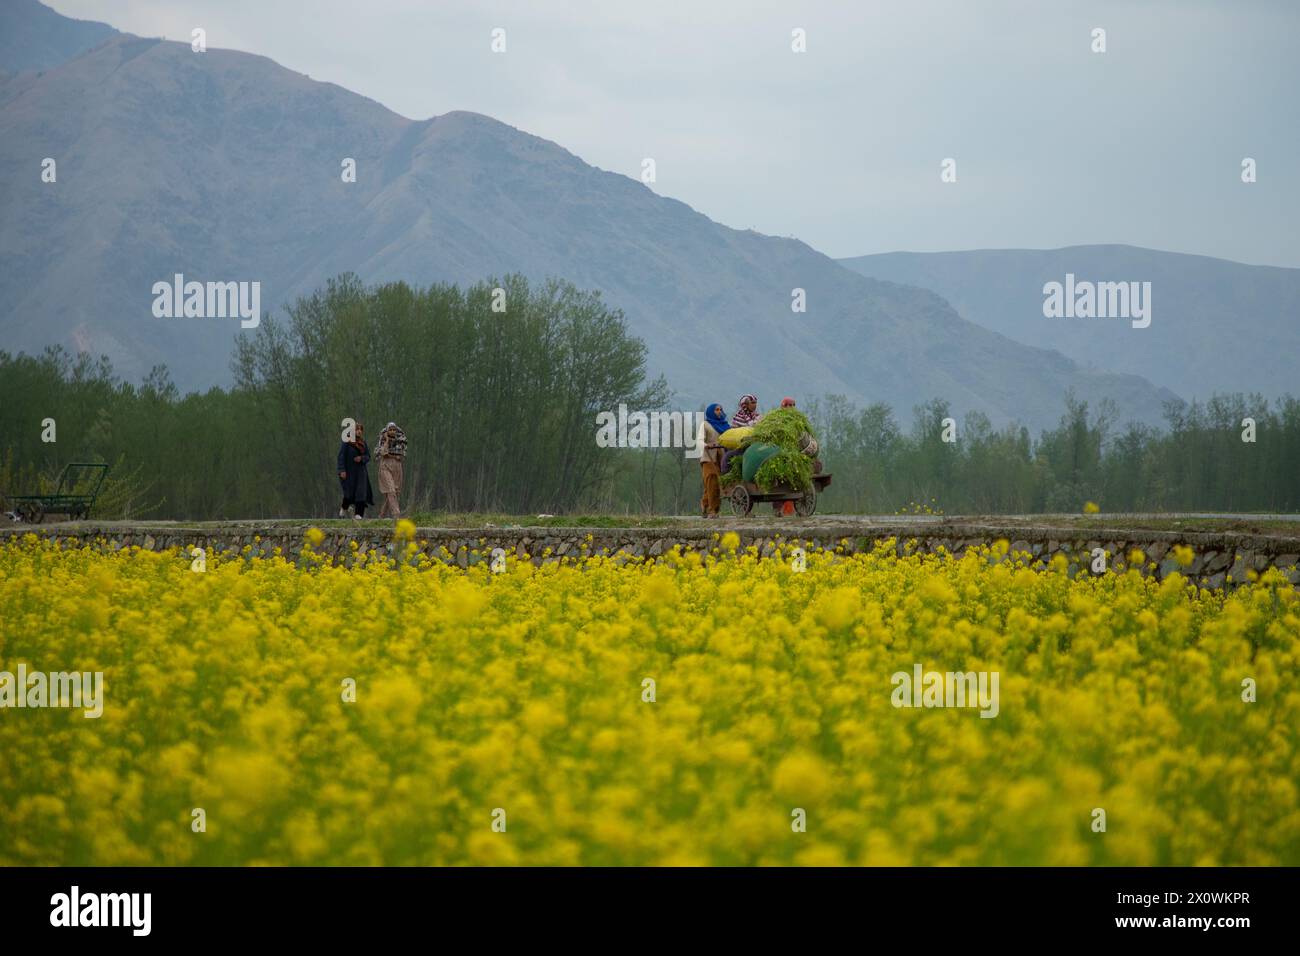 Los agricultores de Cachemira caminan con su carrito cargado de hierba junto a un campo de mostaza floreciente durante la temporada de primavera en Pulwama, al sur de Srinagar. La temporada de primavera en el valle de Cachemira es un período de dos largos meses a partir de mediados de marzo y termina a mediados de mayo. Según la Dirección de Agricultura del Gobierno estatal de Jammu y Cachemira, el valle de Cachemira, que comprende seis distritos, tiene una superficie estimada de 65 mil hectáreas de arroz cultivado con mostaza, lo que representa aproximadamente el 40% de la superficie total dedicada al cultivo de arroz. Foto de stock